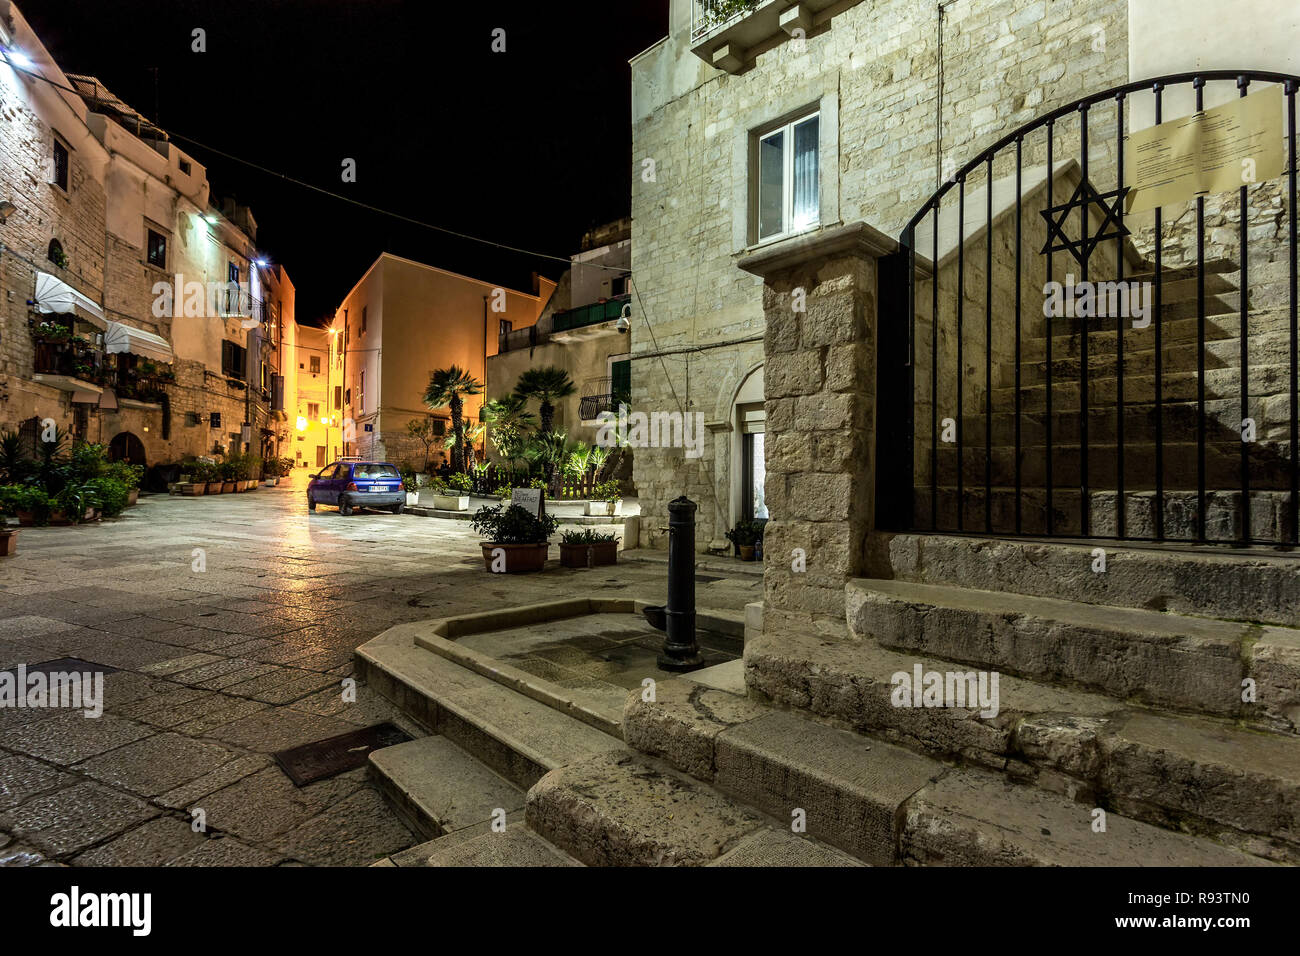 La sinagoga della Scola Grande dell'antico ghetto ebraico di Trani di notte. Trani, provincia di Barletta-Andria-Trani, Puglia, Italia, Europa Foto Stock